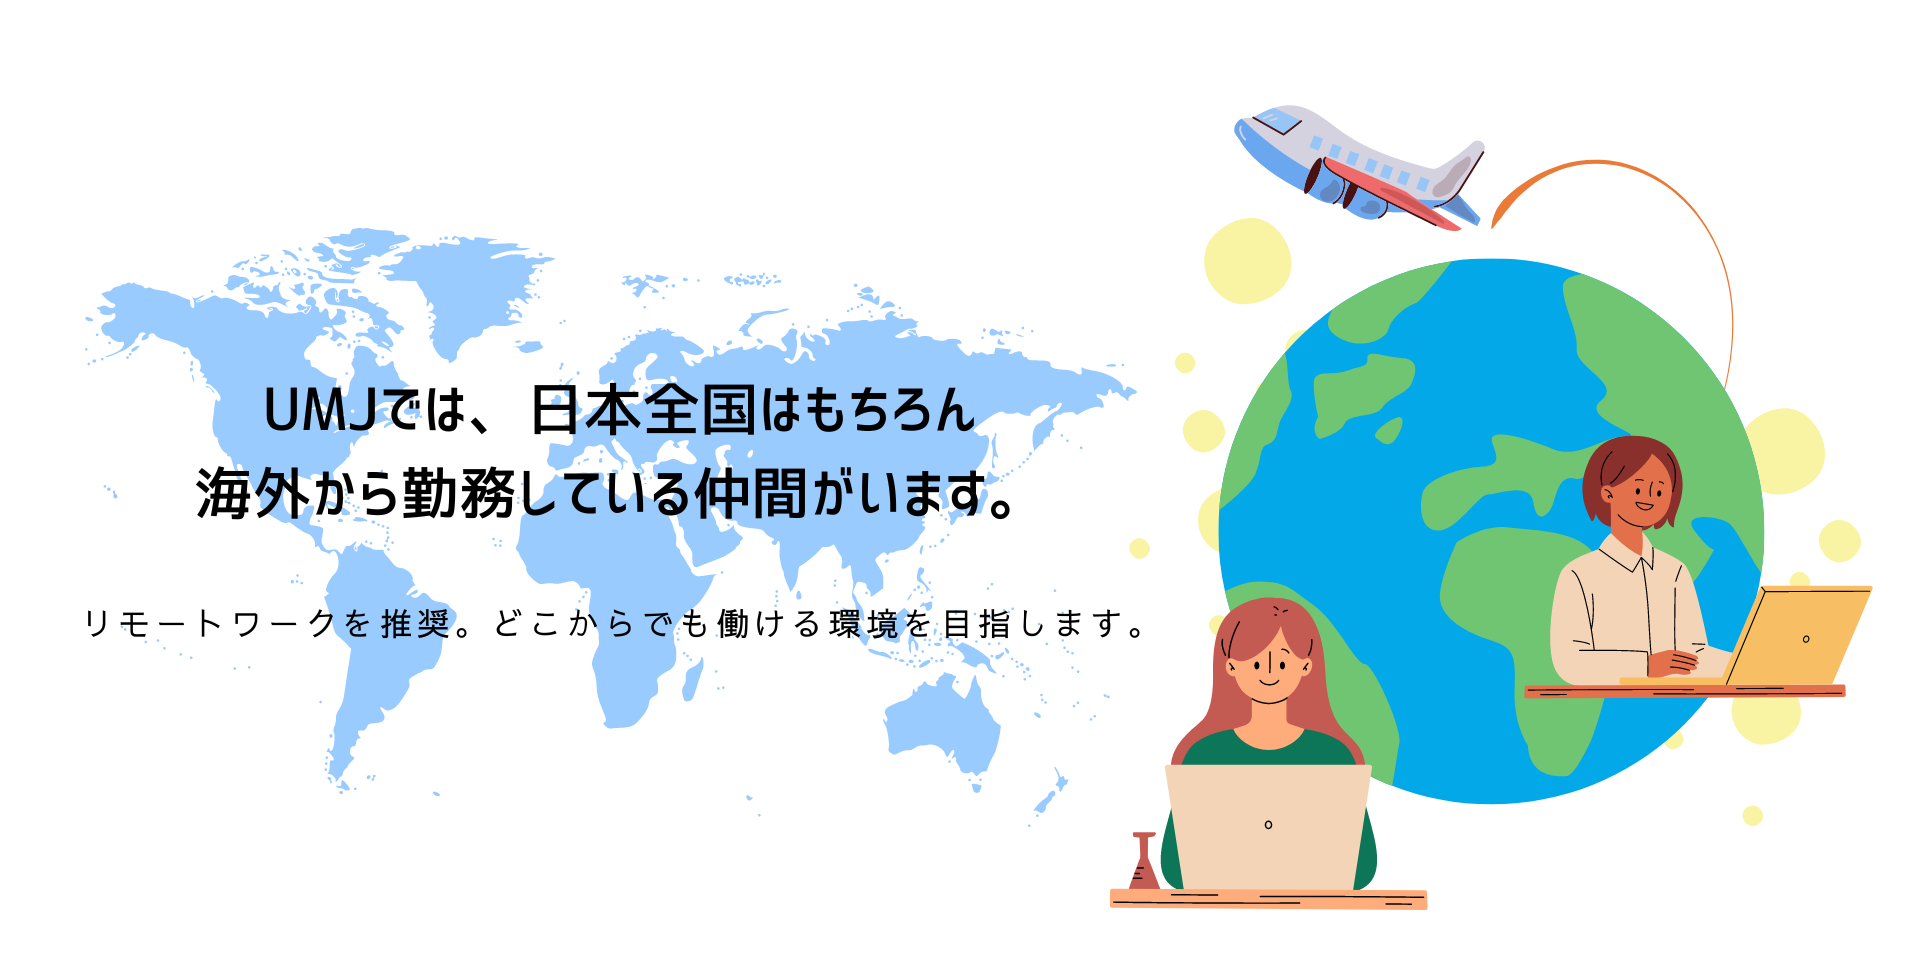 UMJでは、日本全国はもちろん
海外から勤務している仲間がいます。
リモートワークを推奨。どこからでも働ける環境を目指します。